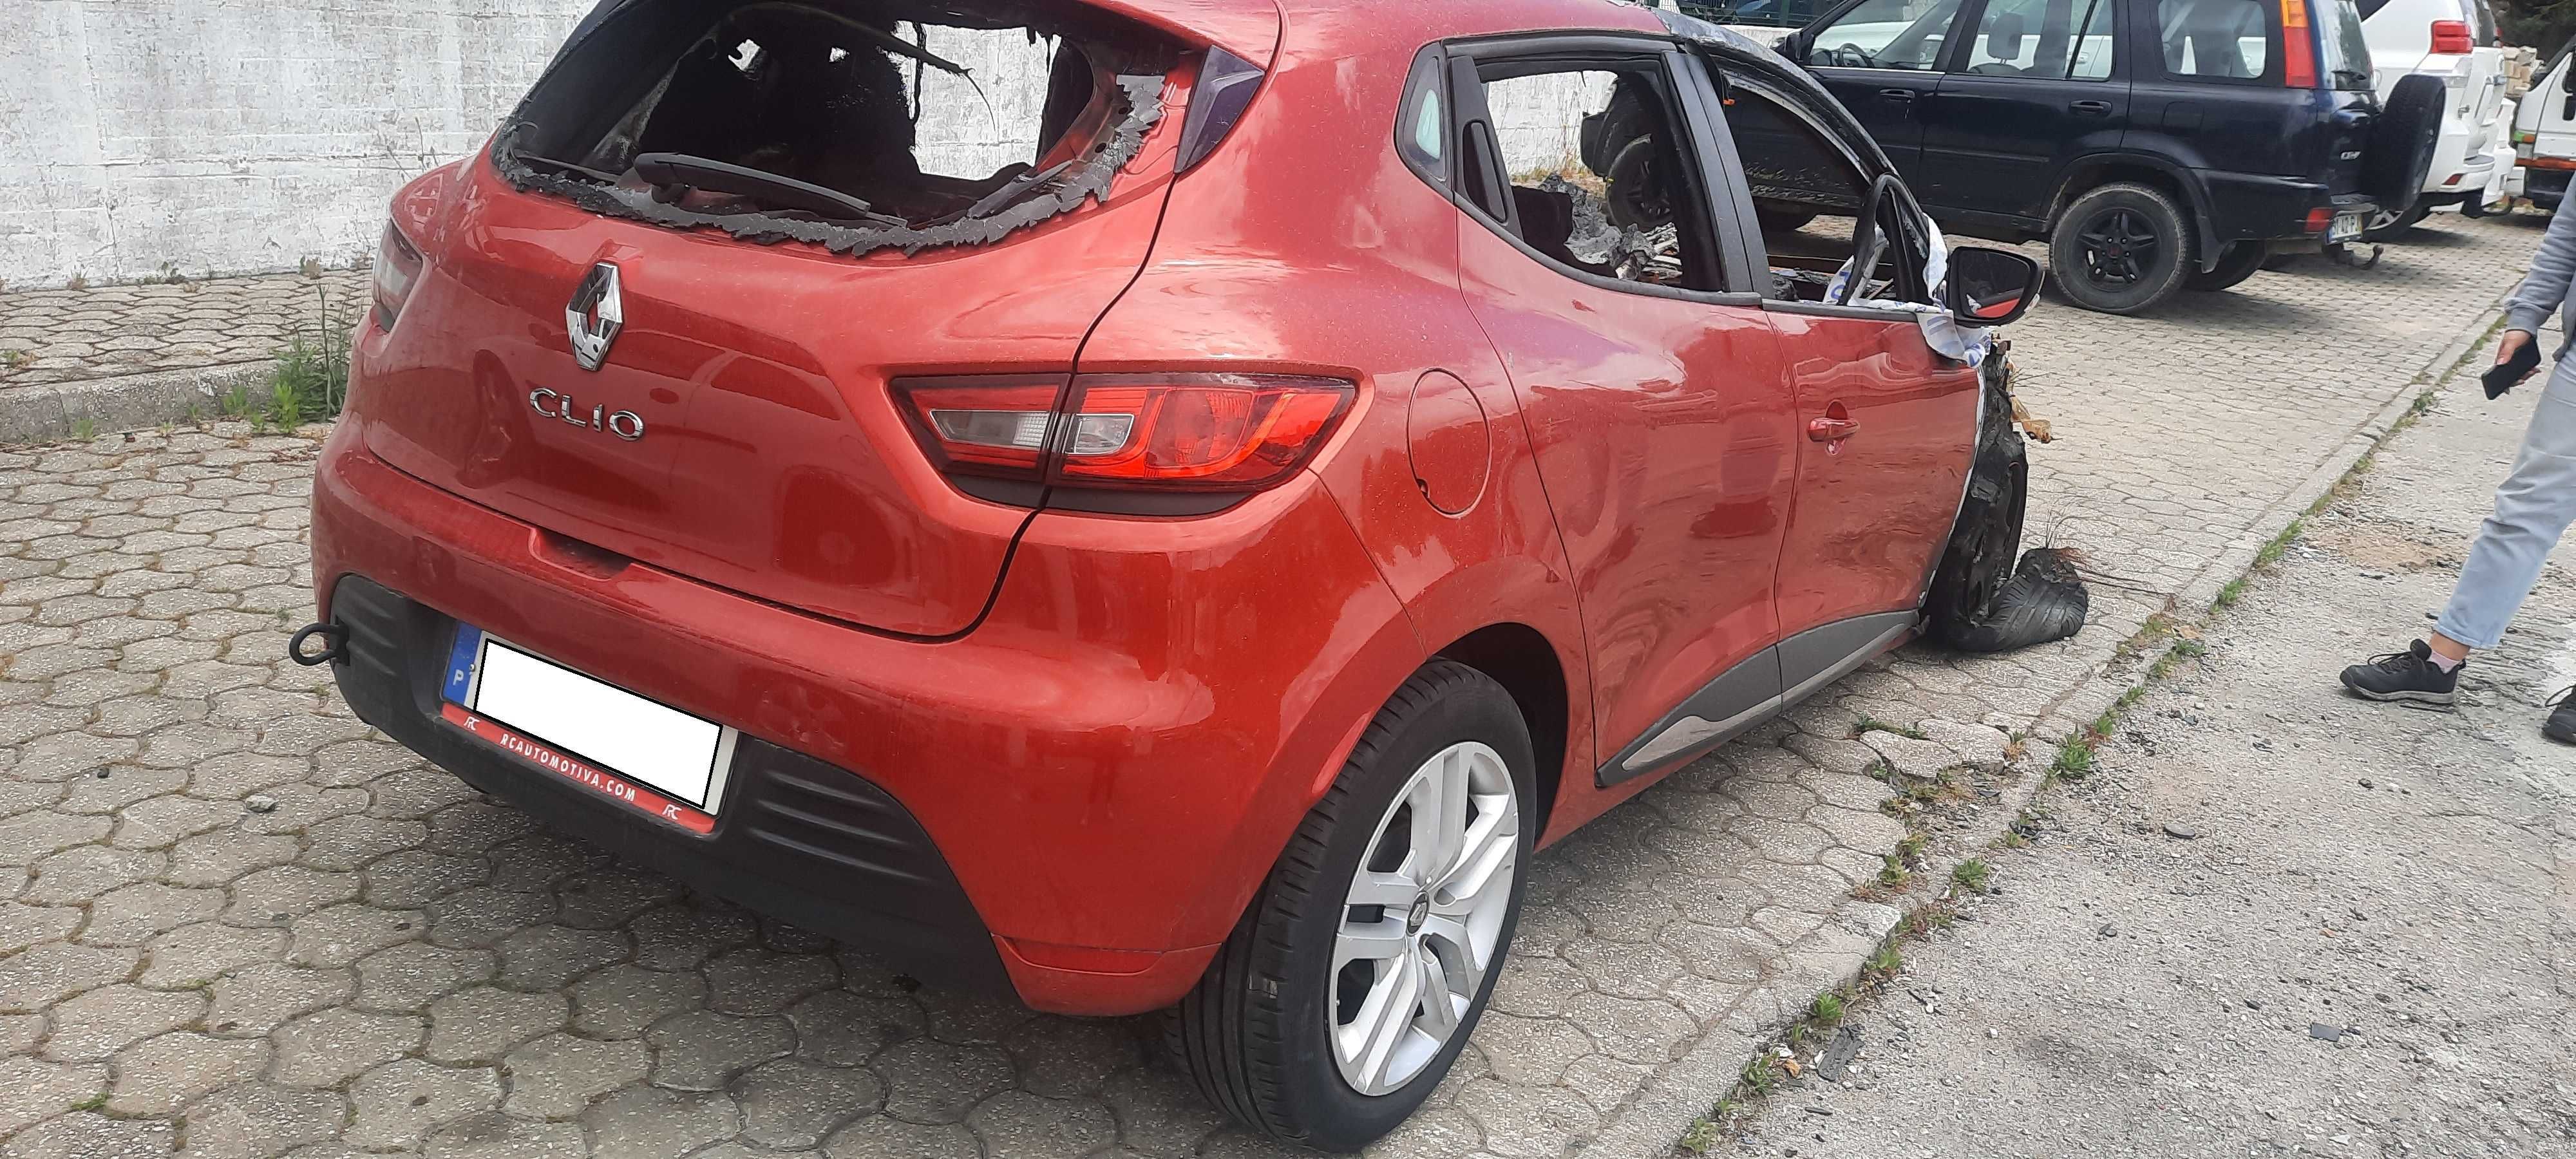 Peças Renault Clio 1.0 gasolina 2019